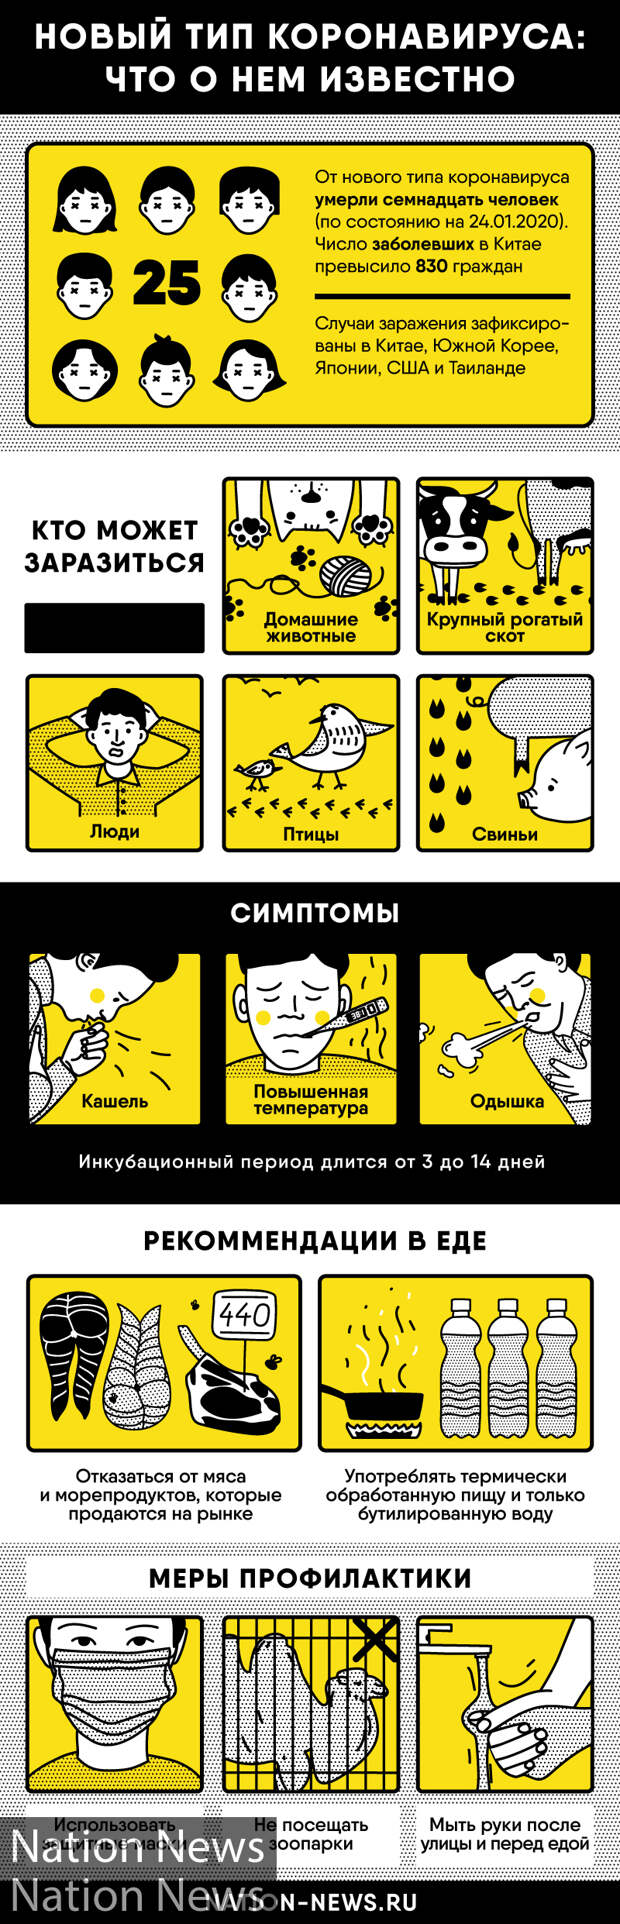 Почти каждый второй россиянин готов сделать прививку от коронавируса